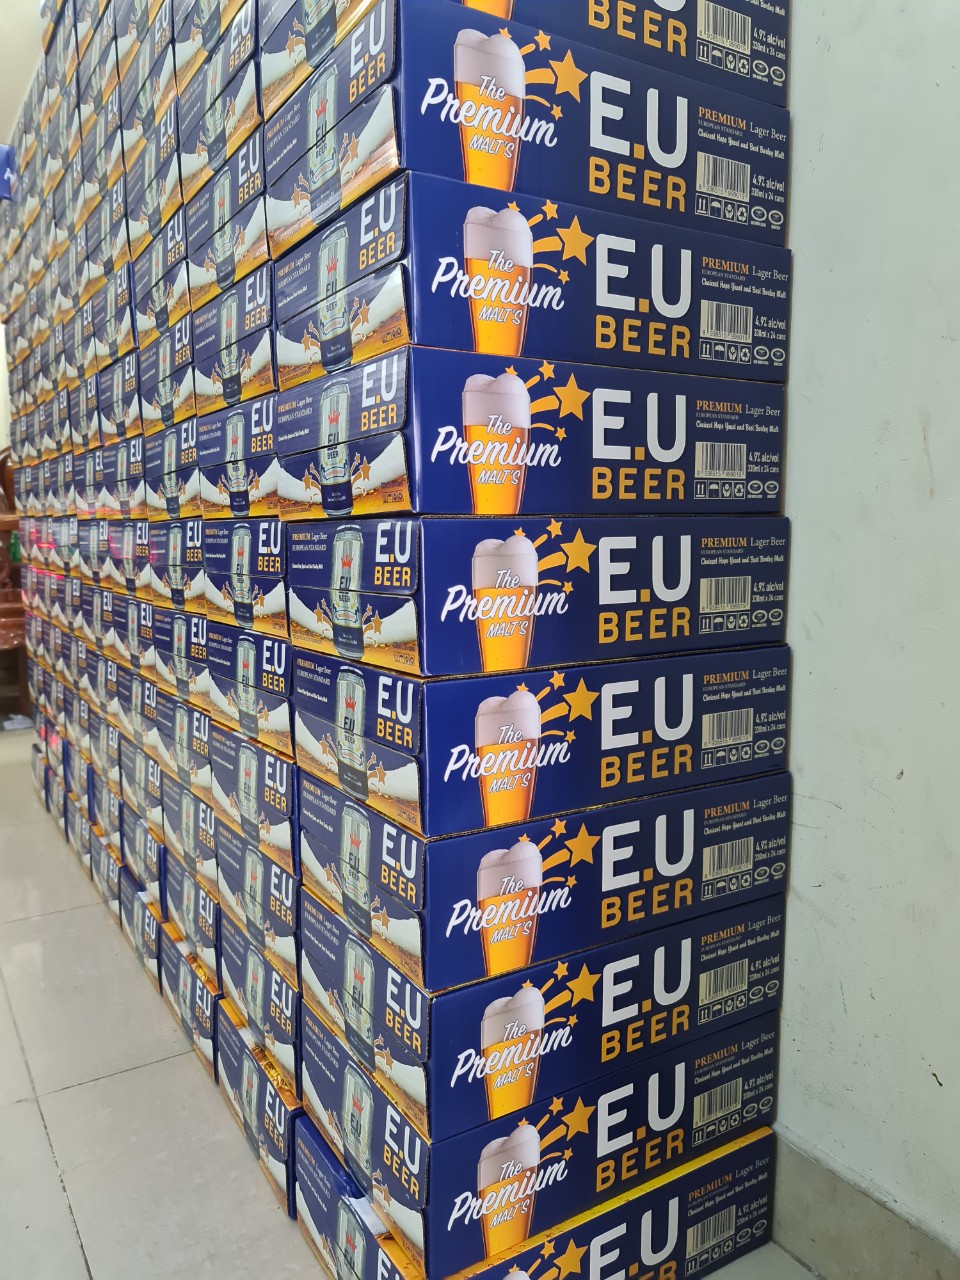  - EU Beer - Công Ty TNHH MTV Quý Phú Lâm